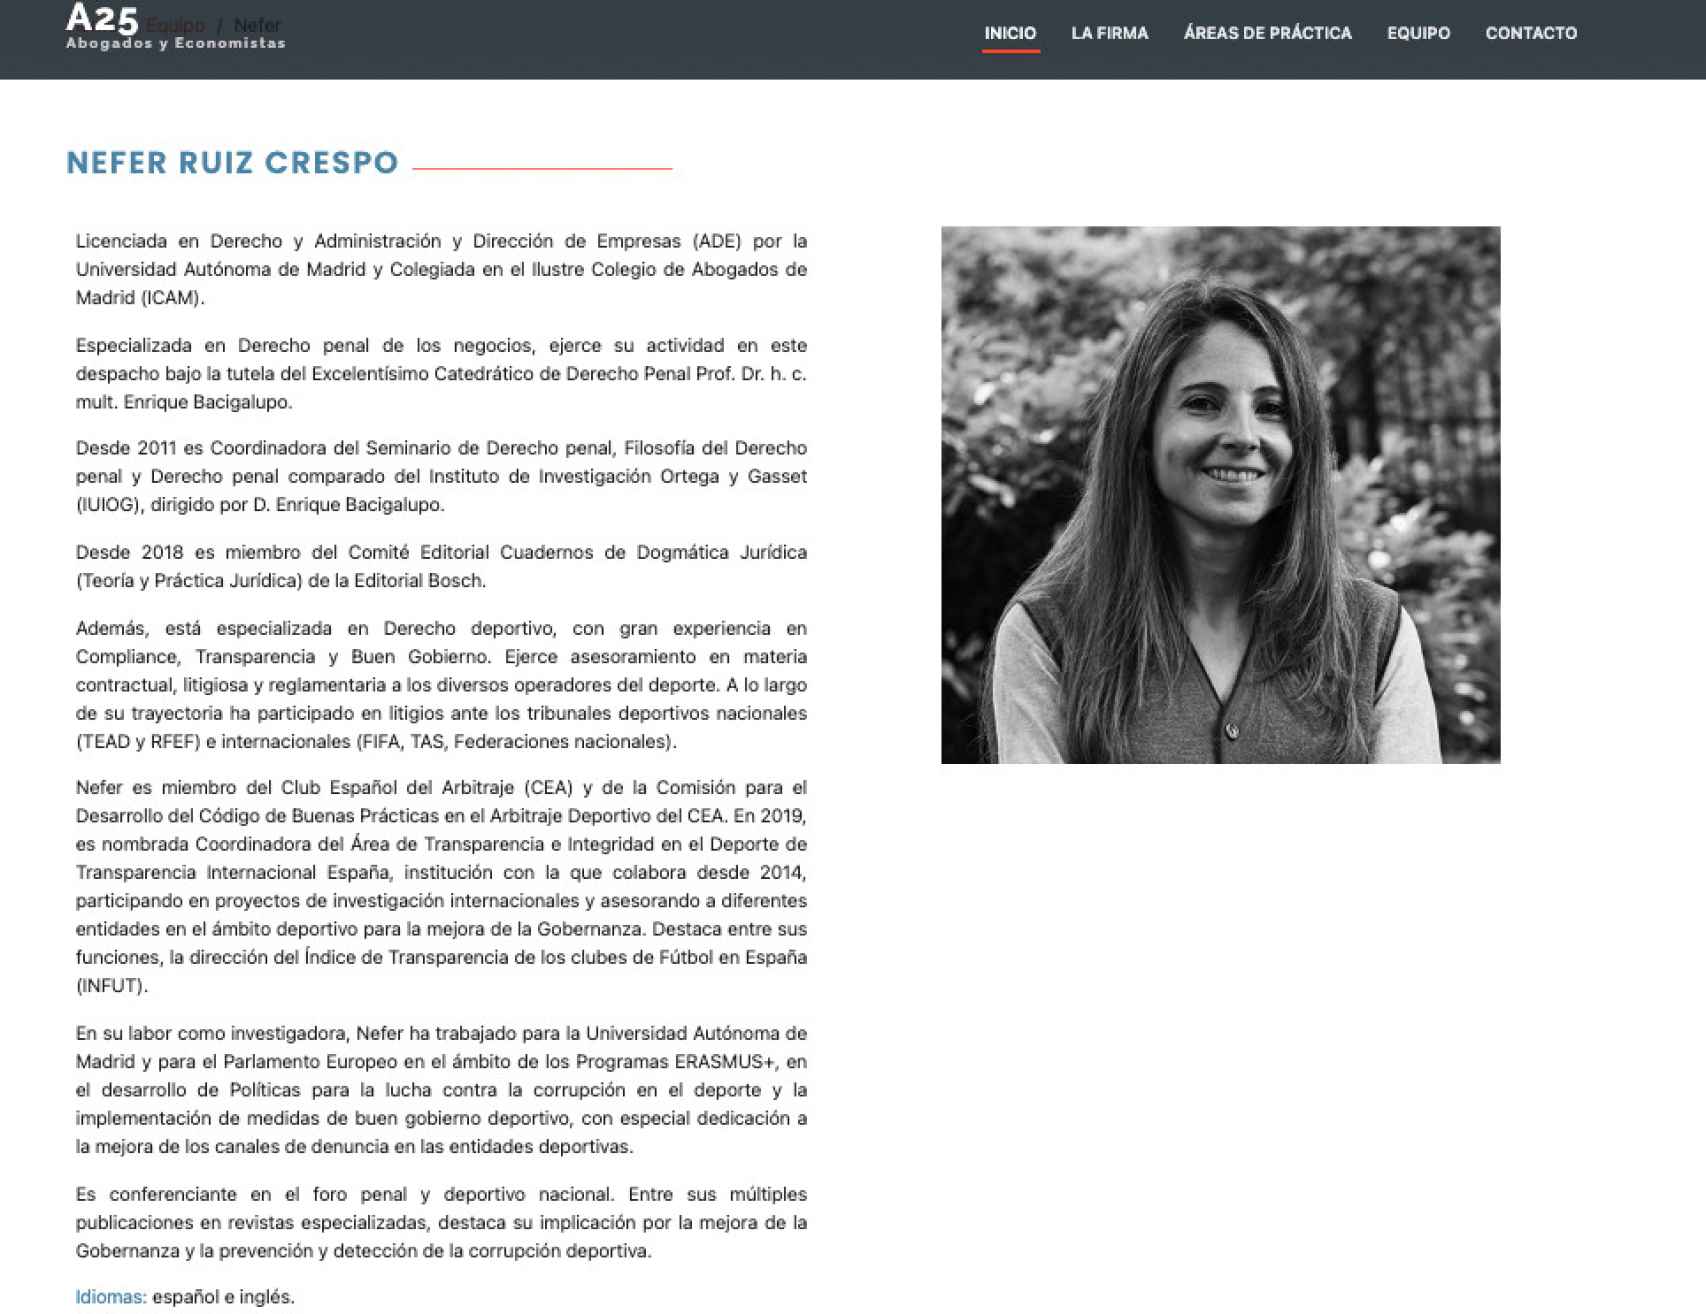 Currículum de Nefer Ruiz en la web del bufete A25